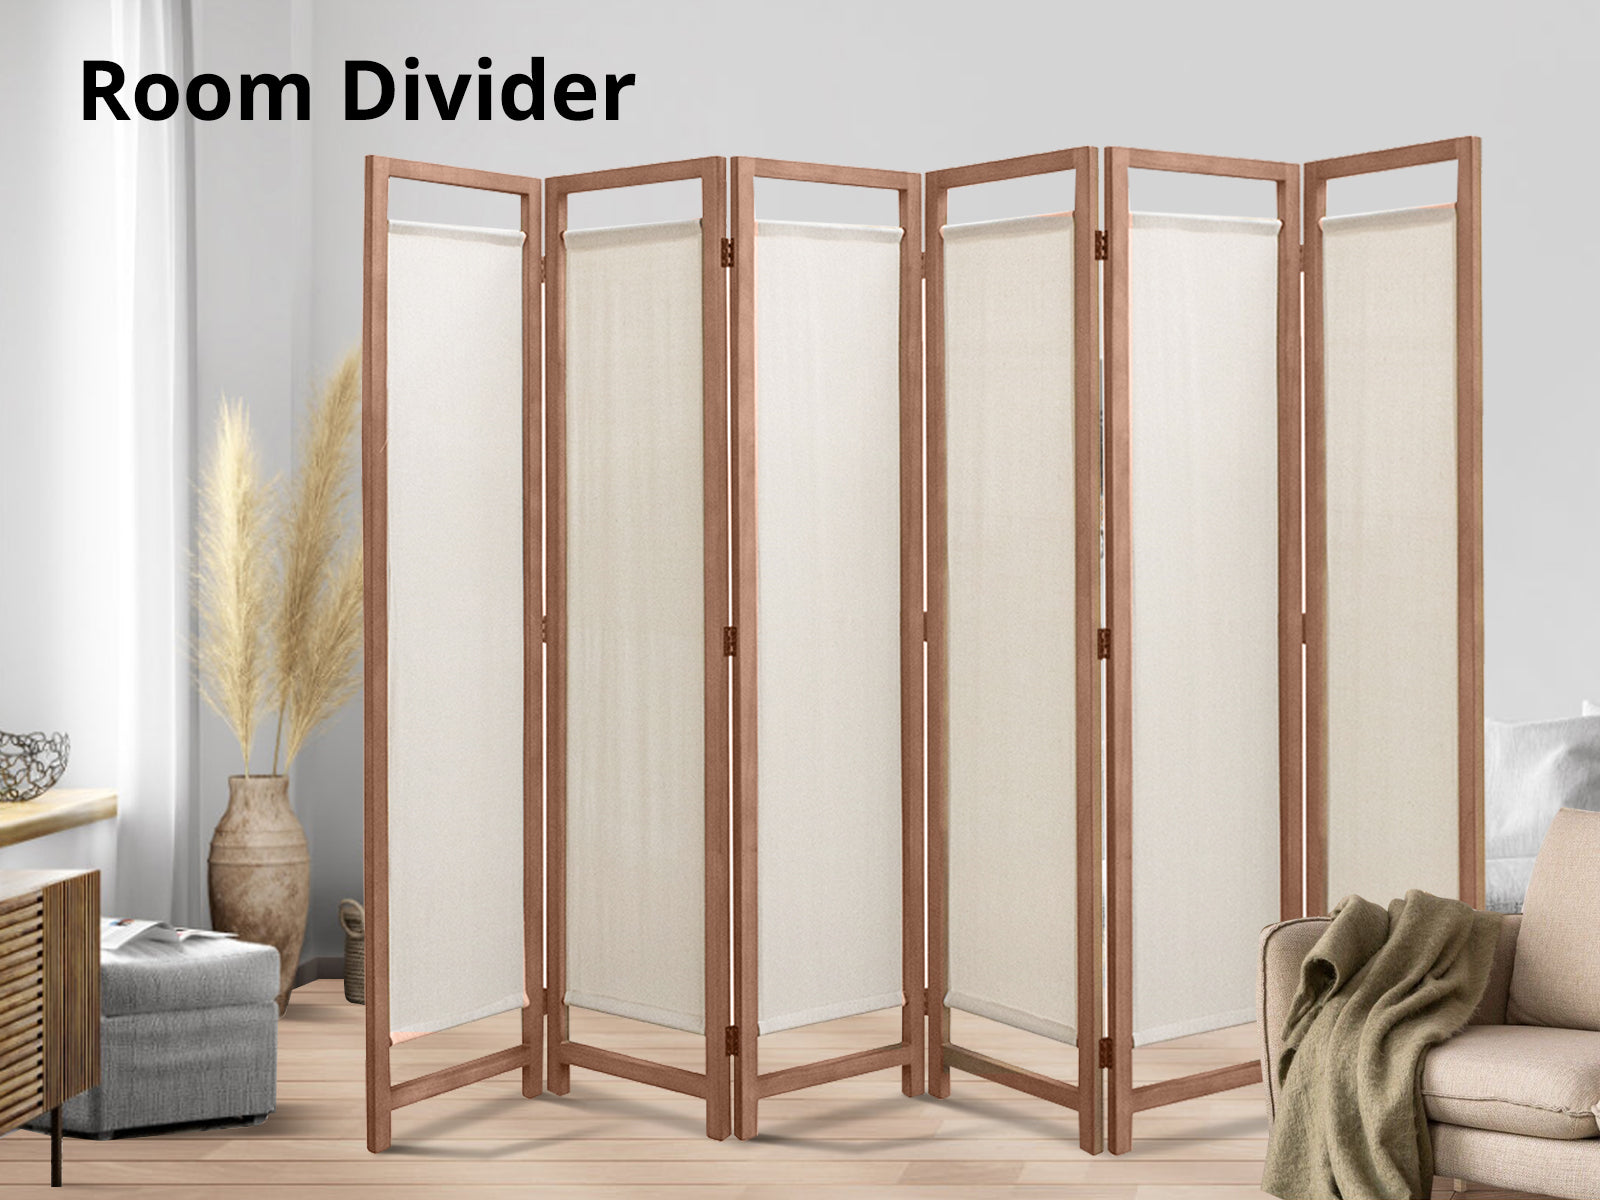 Room divider C M4-6 Brown